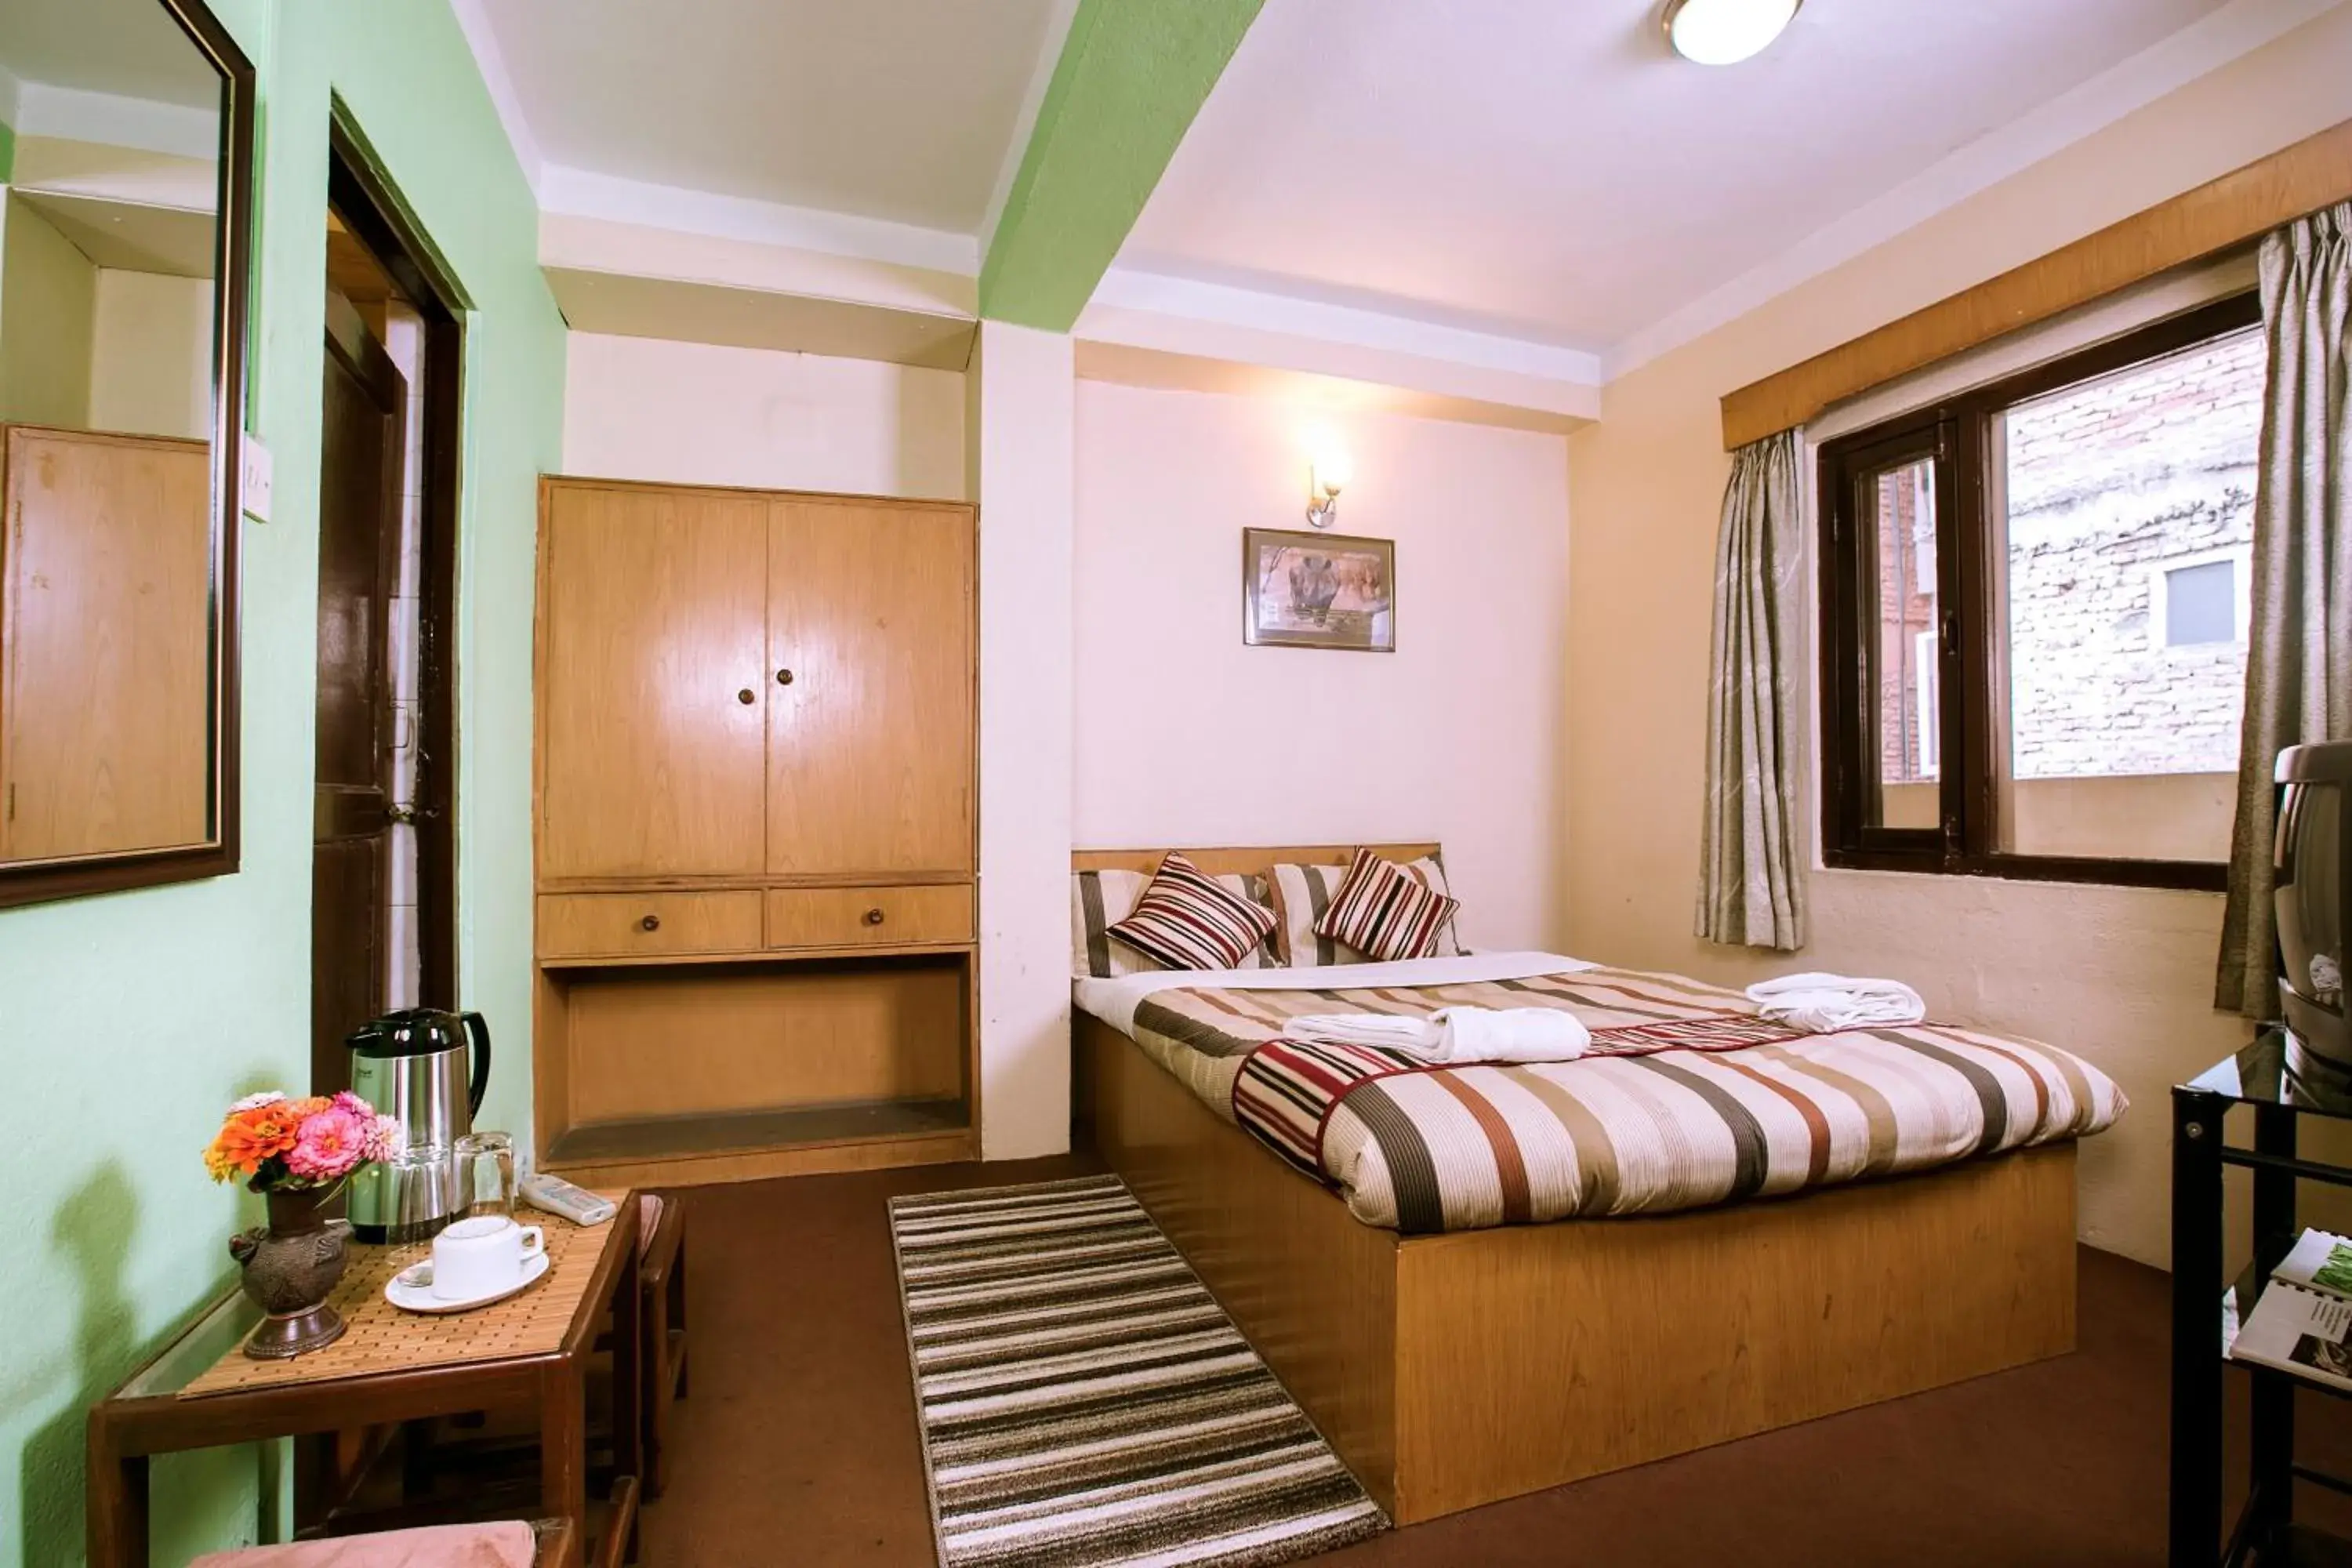 Bed, Room Photo in Hotel Nana